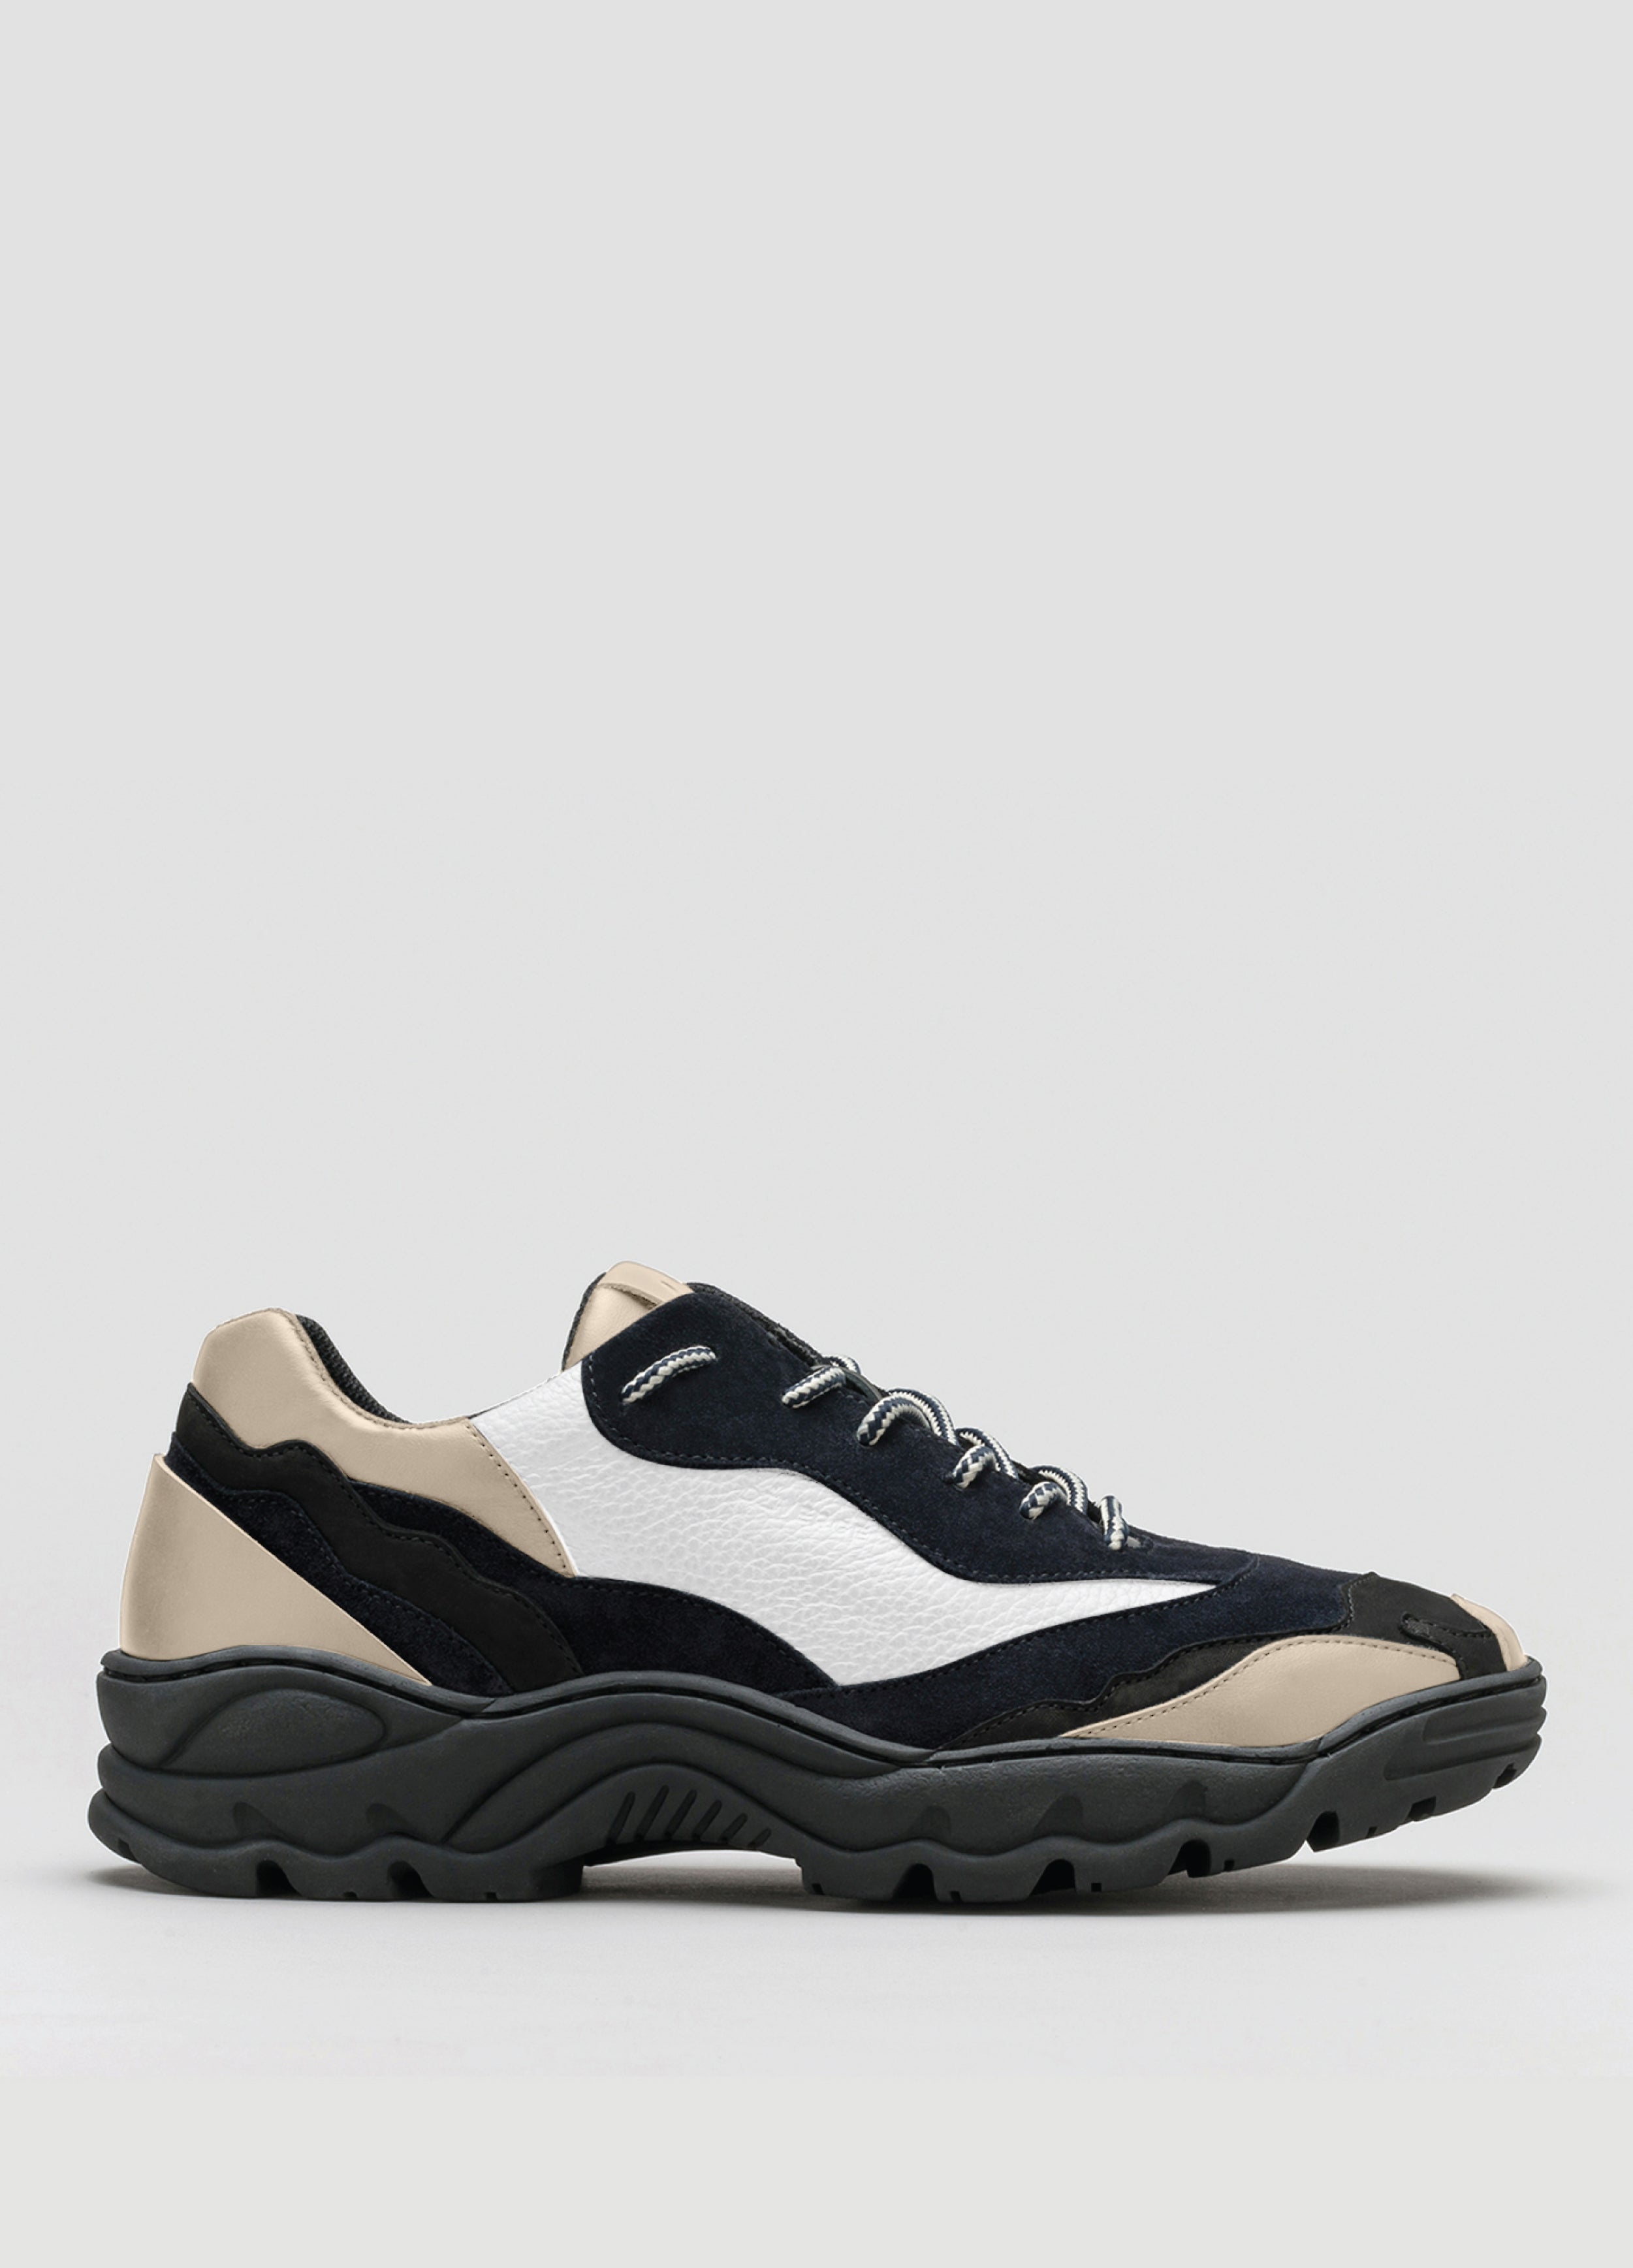 Farbmix aus schwarzem, beigem und weißem Premium-Leder sneakers landscape mit raffinierter Silhouetten-Seitenansicht